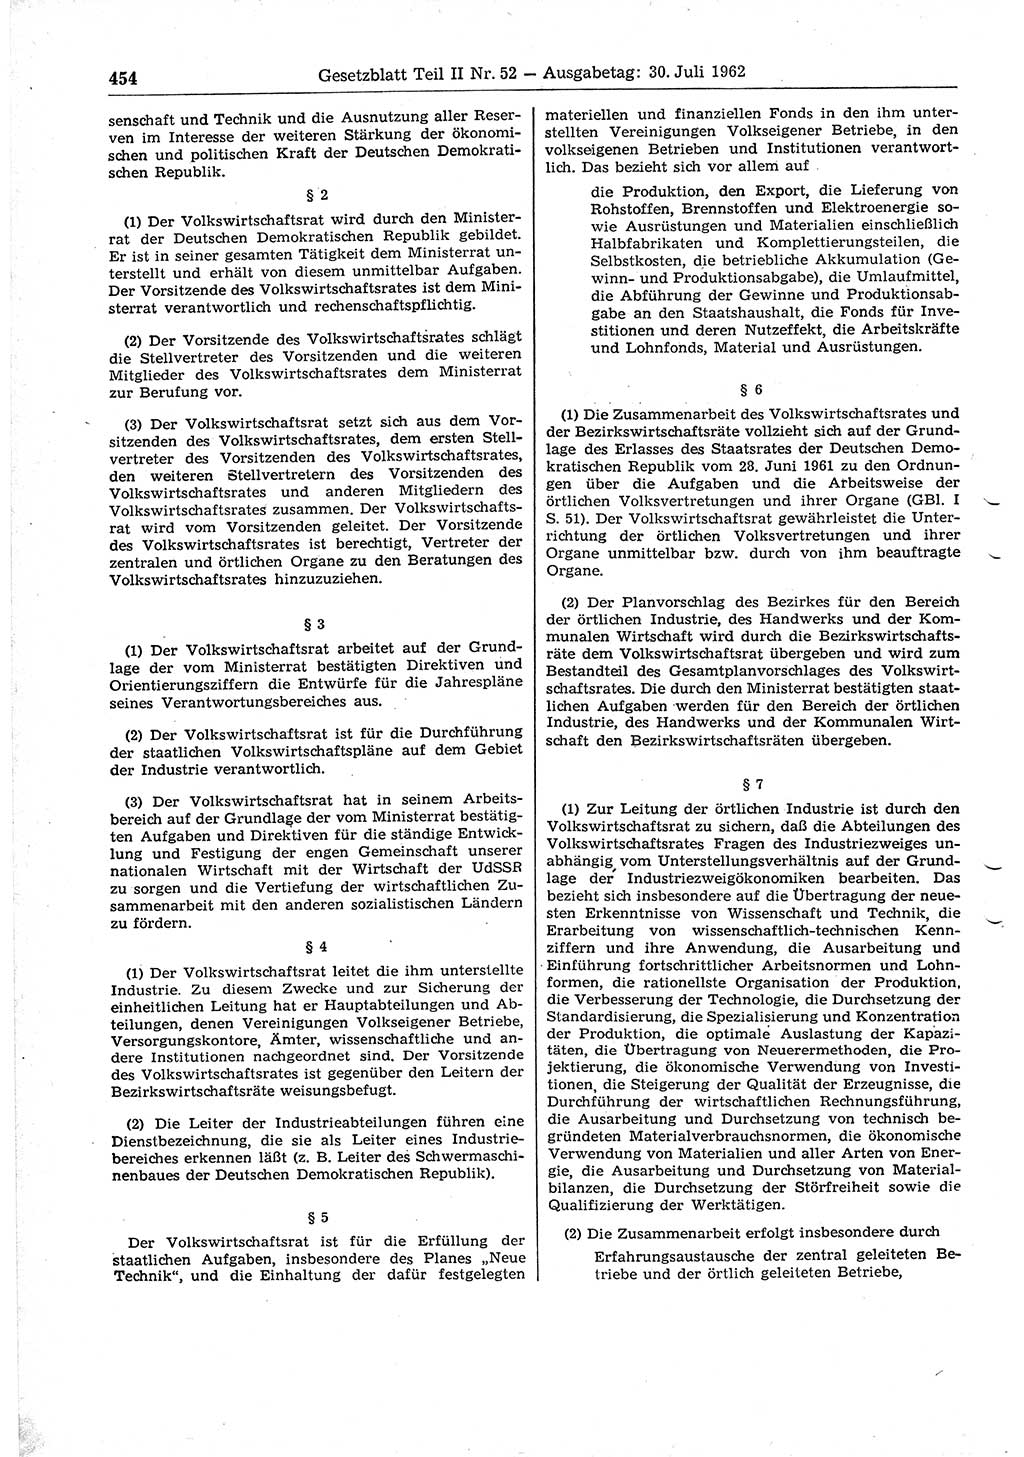 Gesetzblatt (GBl.) der Deutschen Demokratischen Republik (DDR) Teil ⅠⅠ 1962, Seite 454 (GBl. DDR ⅠⅠ 1962, S. 454)